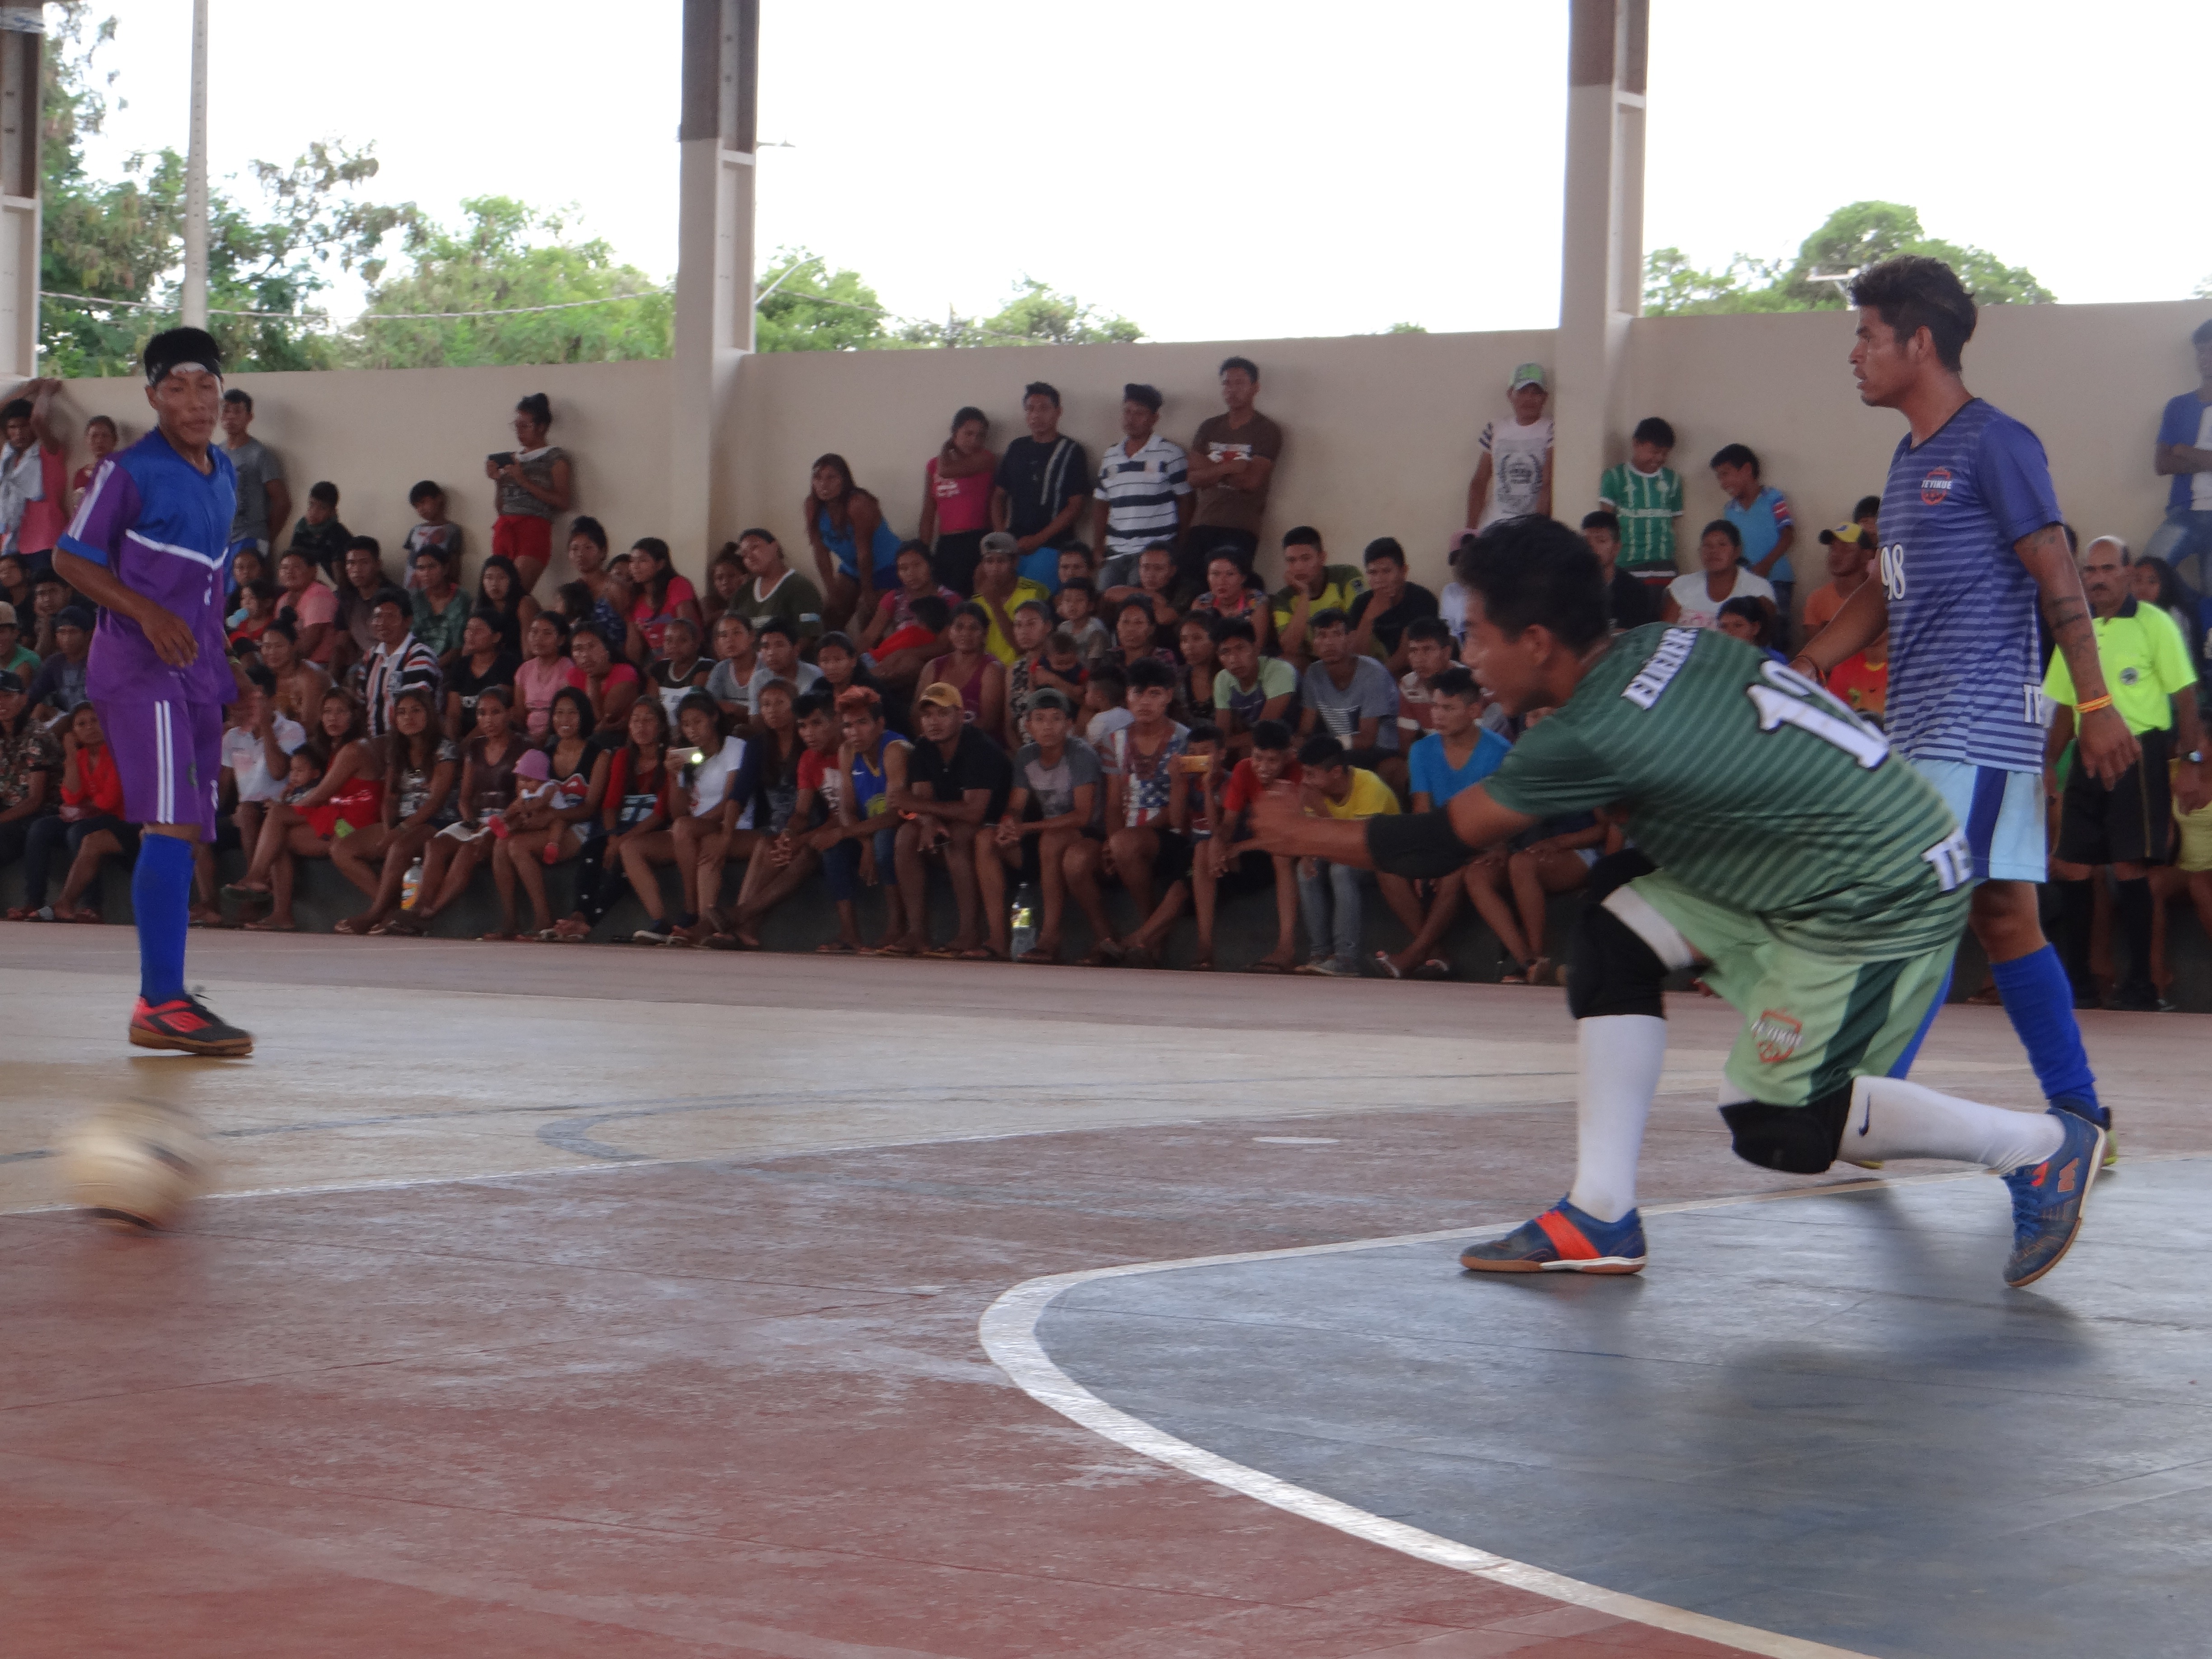 A final do Futsal aconteceu na tarde do dia 25 de janeiro / Foto: Moreira Produções